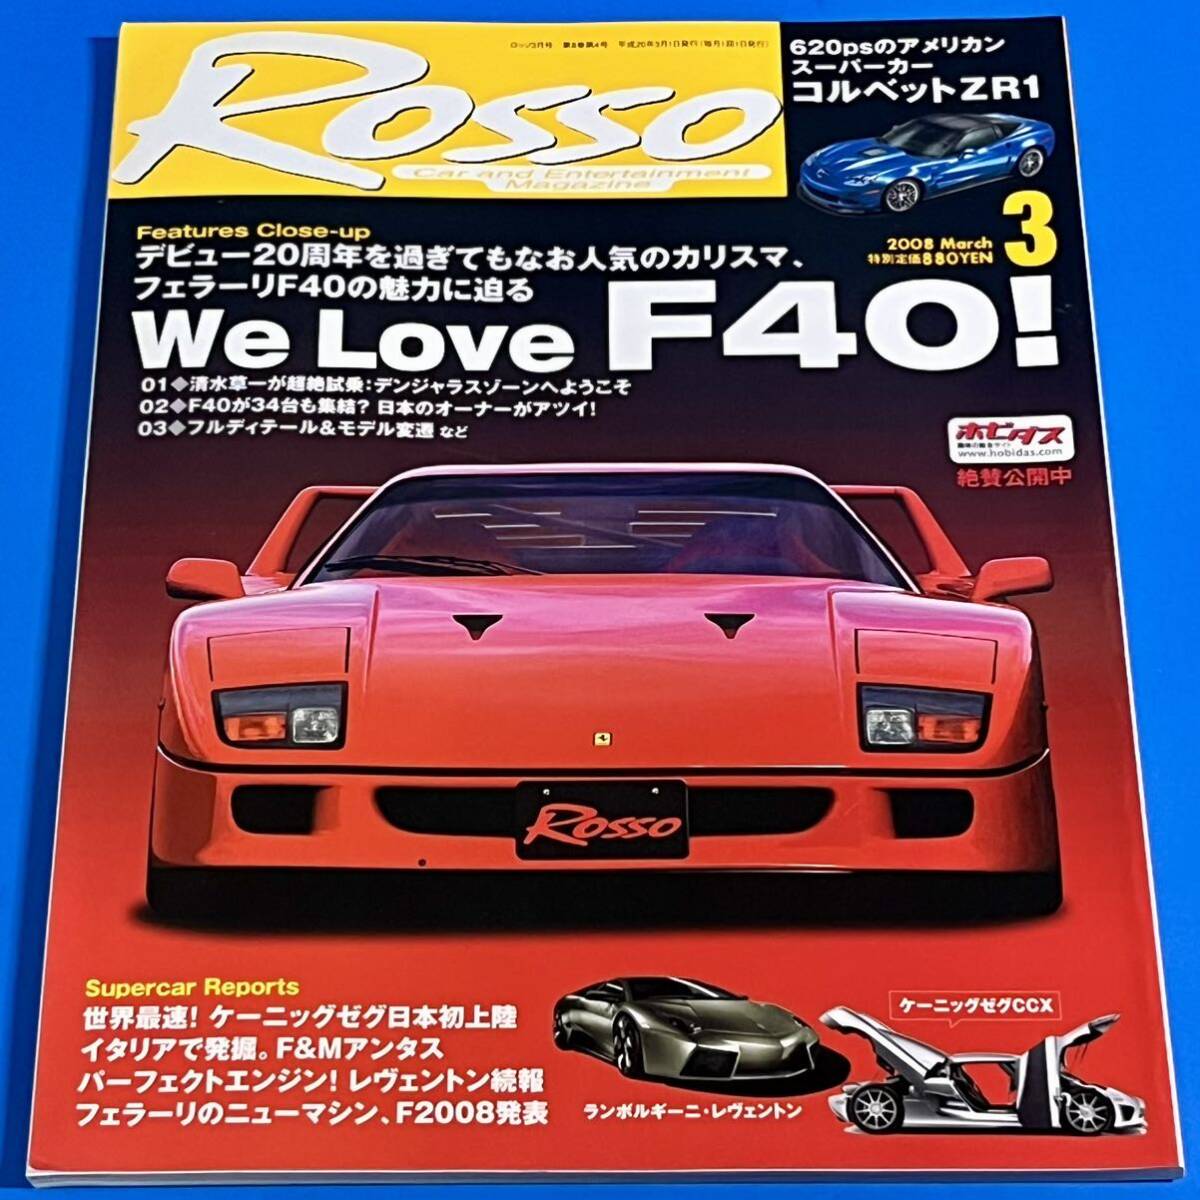 【ROSSO】2008年3月号 We Love F40！ ホットスーパーカー2008の画像1